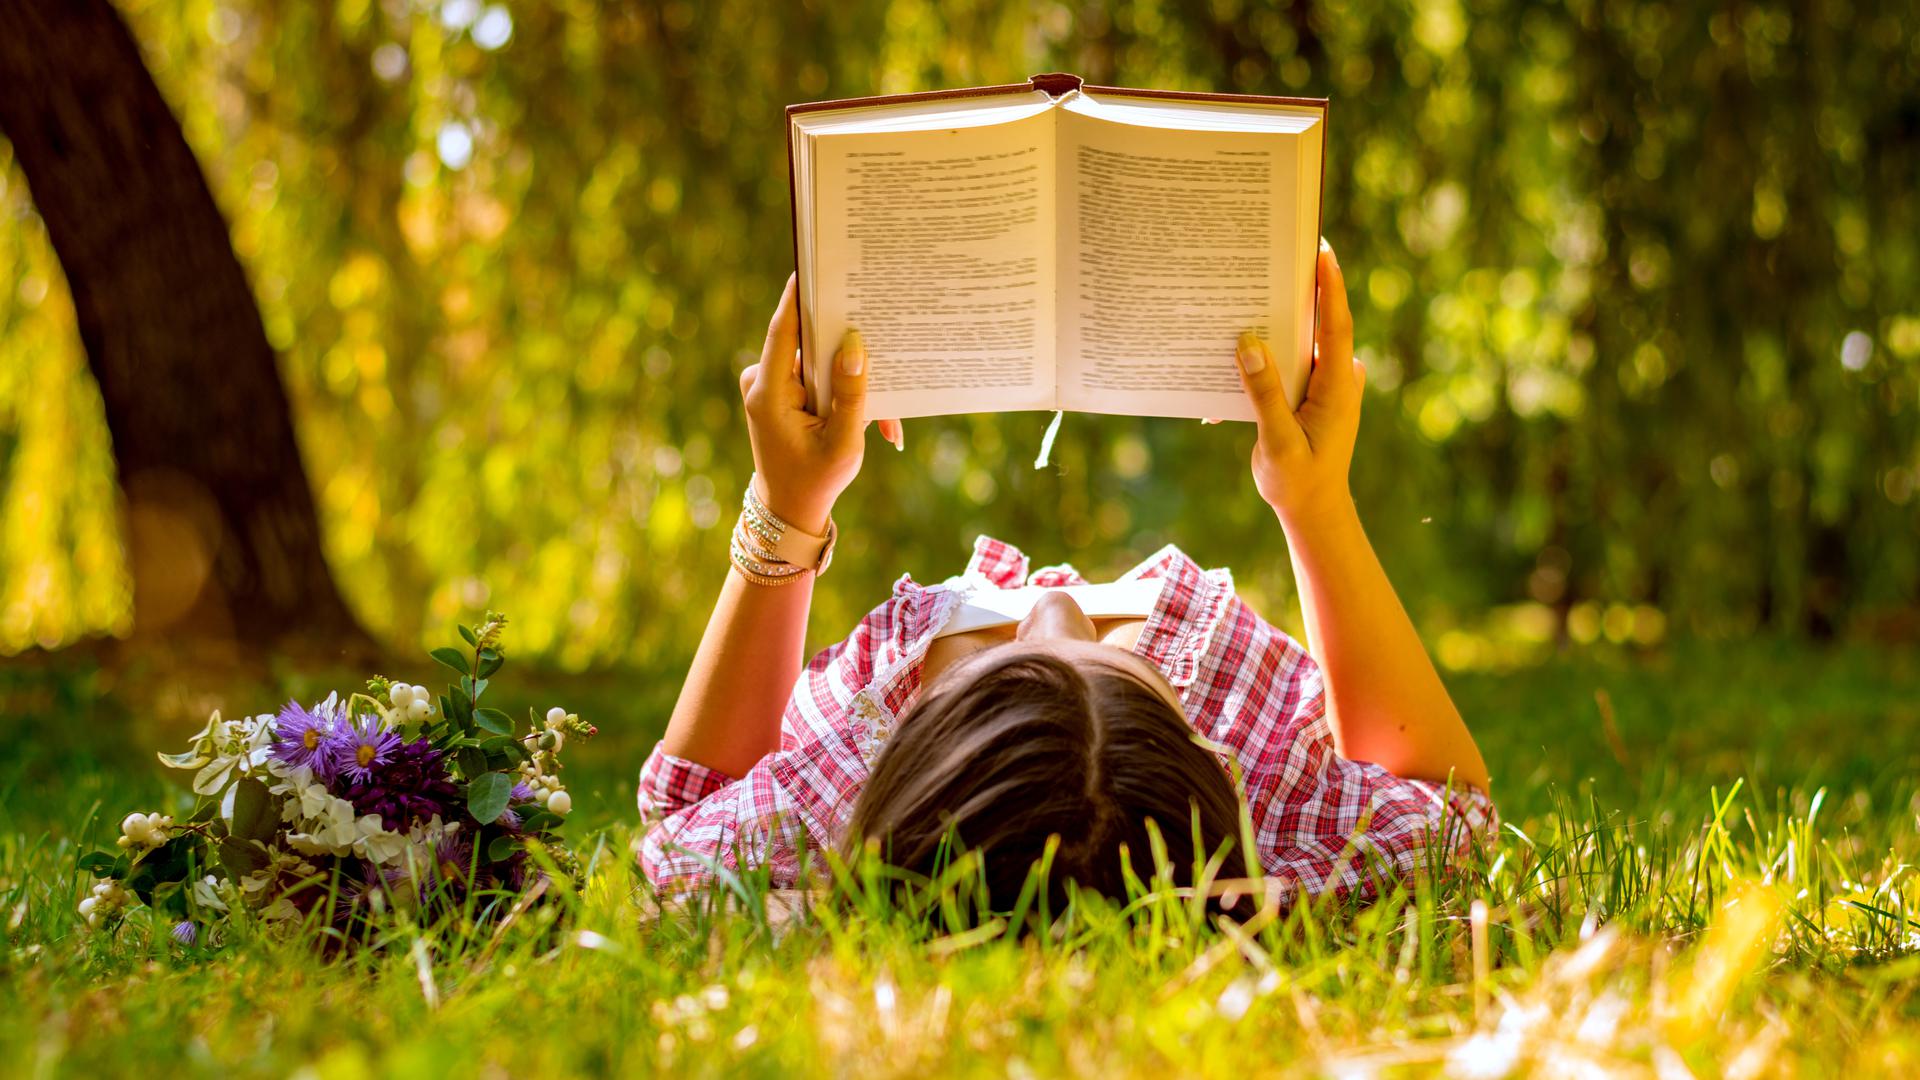 Bei passendem Wetter lässt sich das Lesevergnügen im Frühling auch an der frischen Luft genießen.